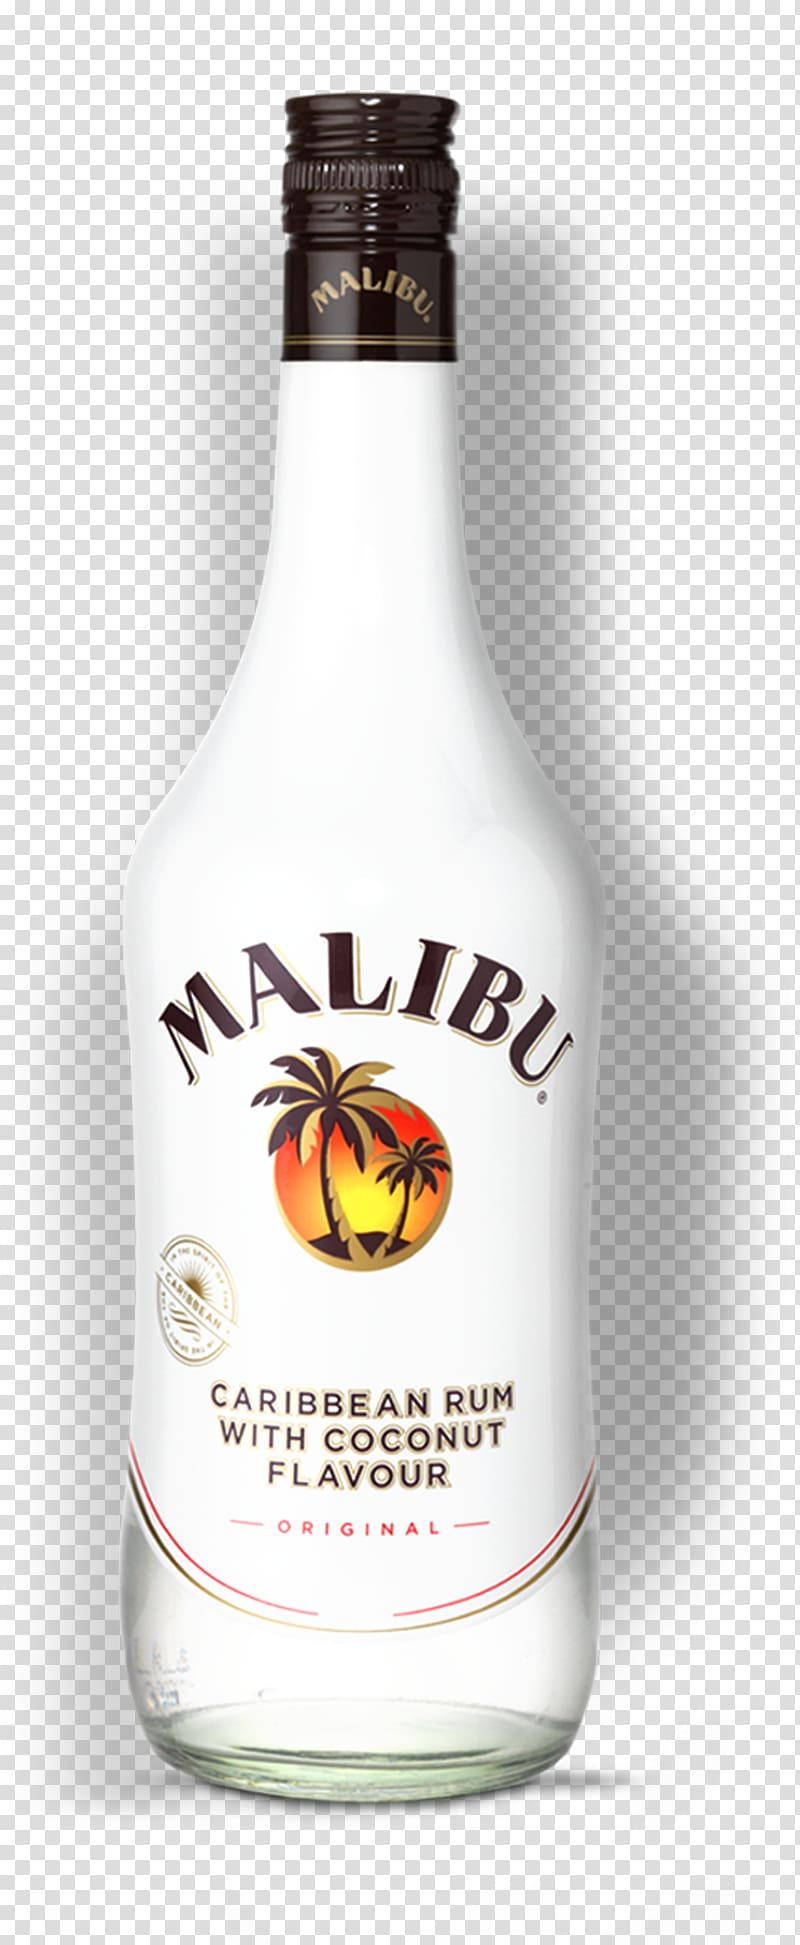 Liqueur Malibu Rum Cocktail Fizzy Drinks, cocktail transparent background PNG clipart